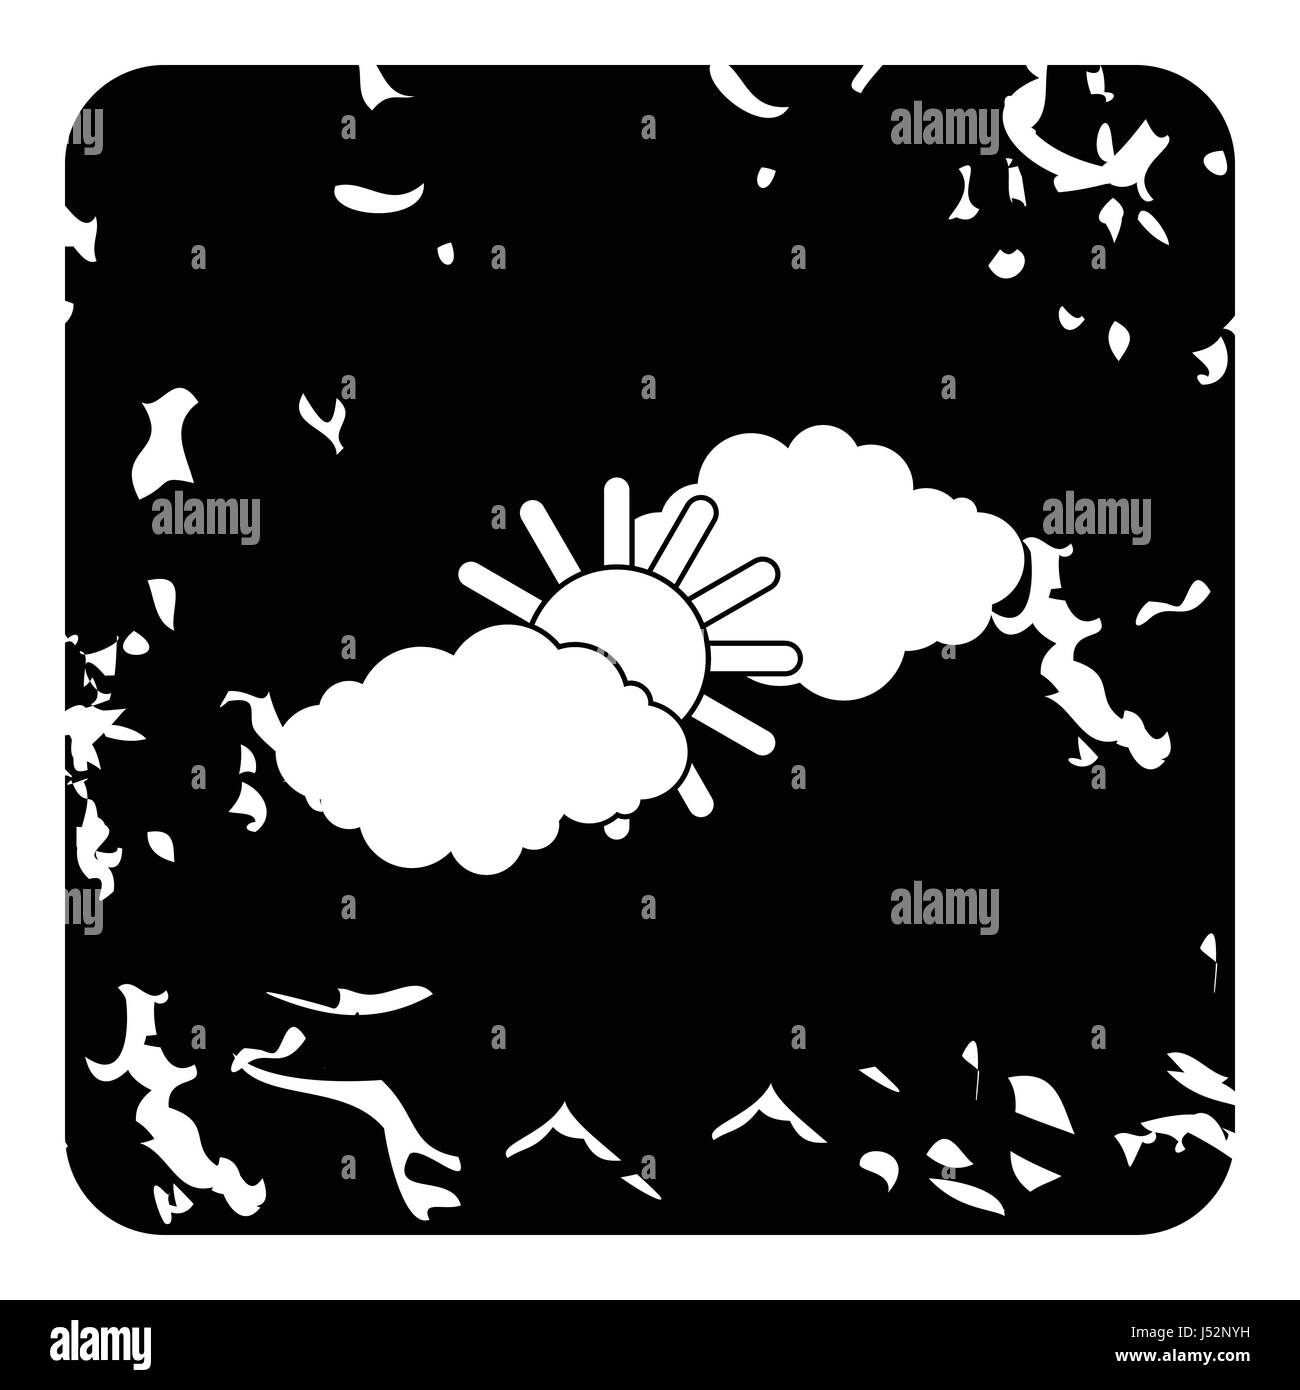 Wolke und Sonne-Symbol. Grunge-Illustration der Wolke und Sonne Vektor Icon für web Stock Vektor